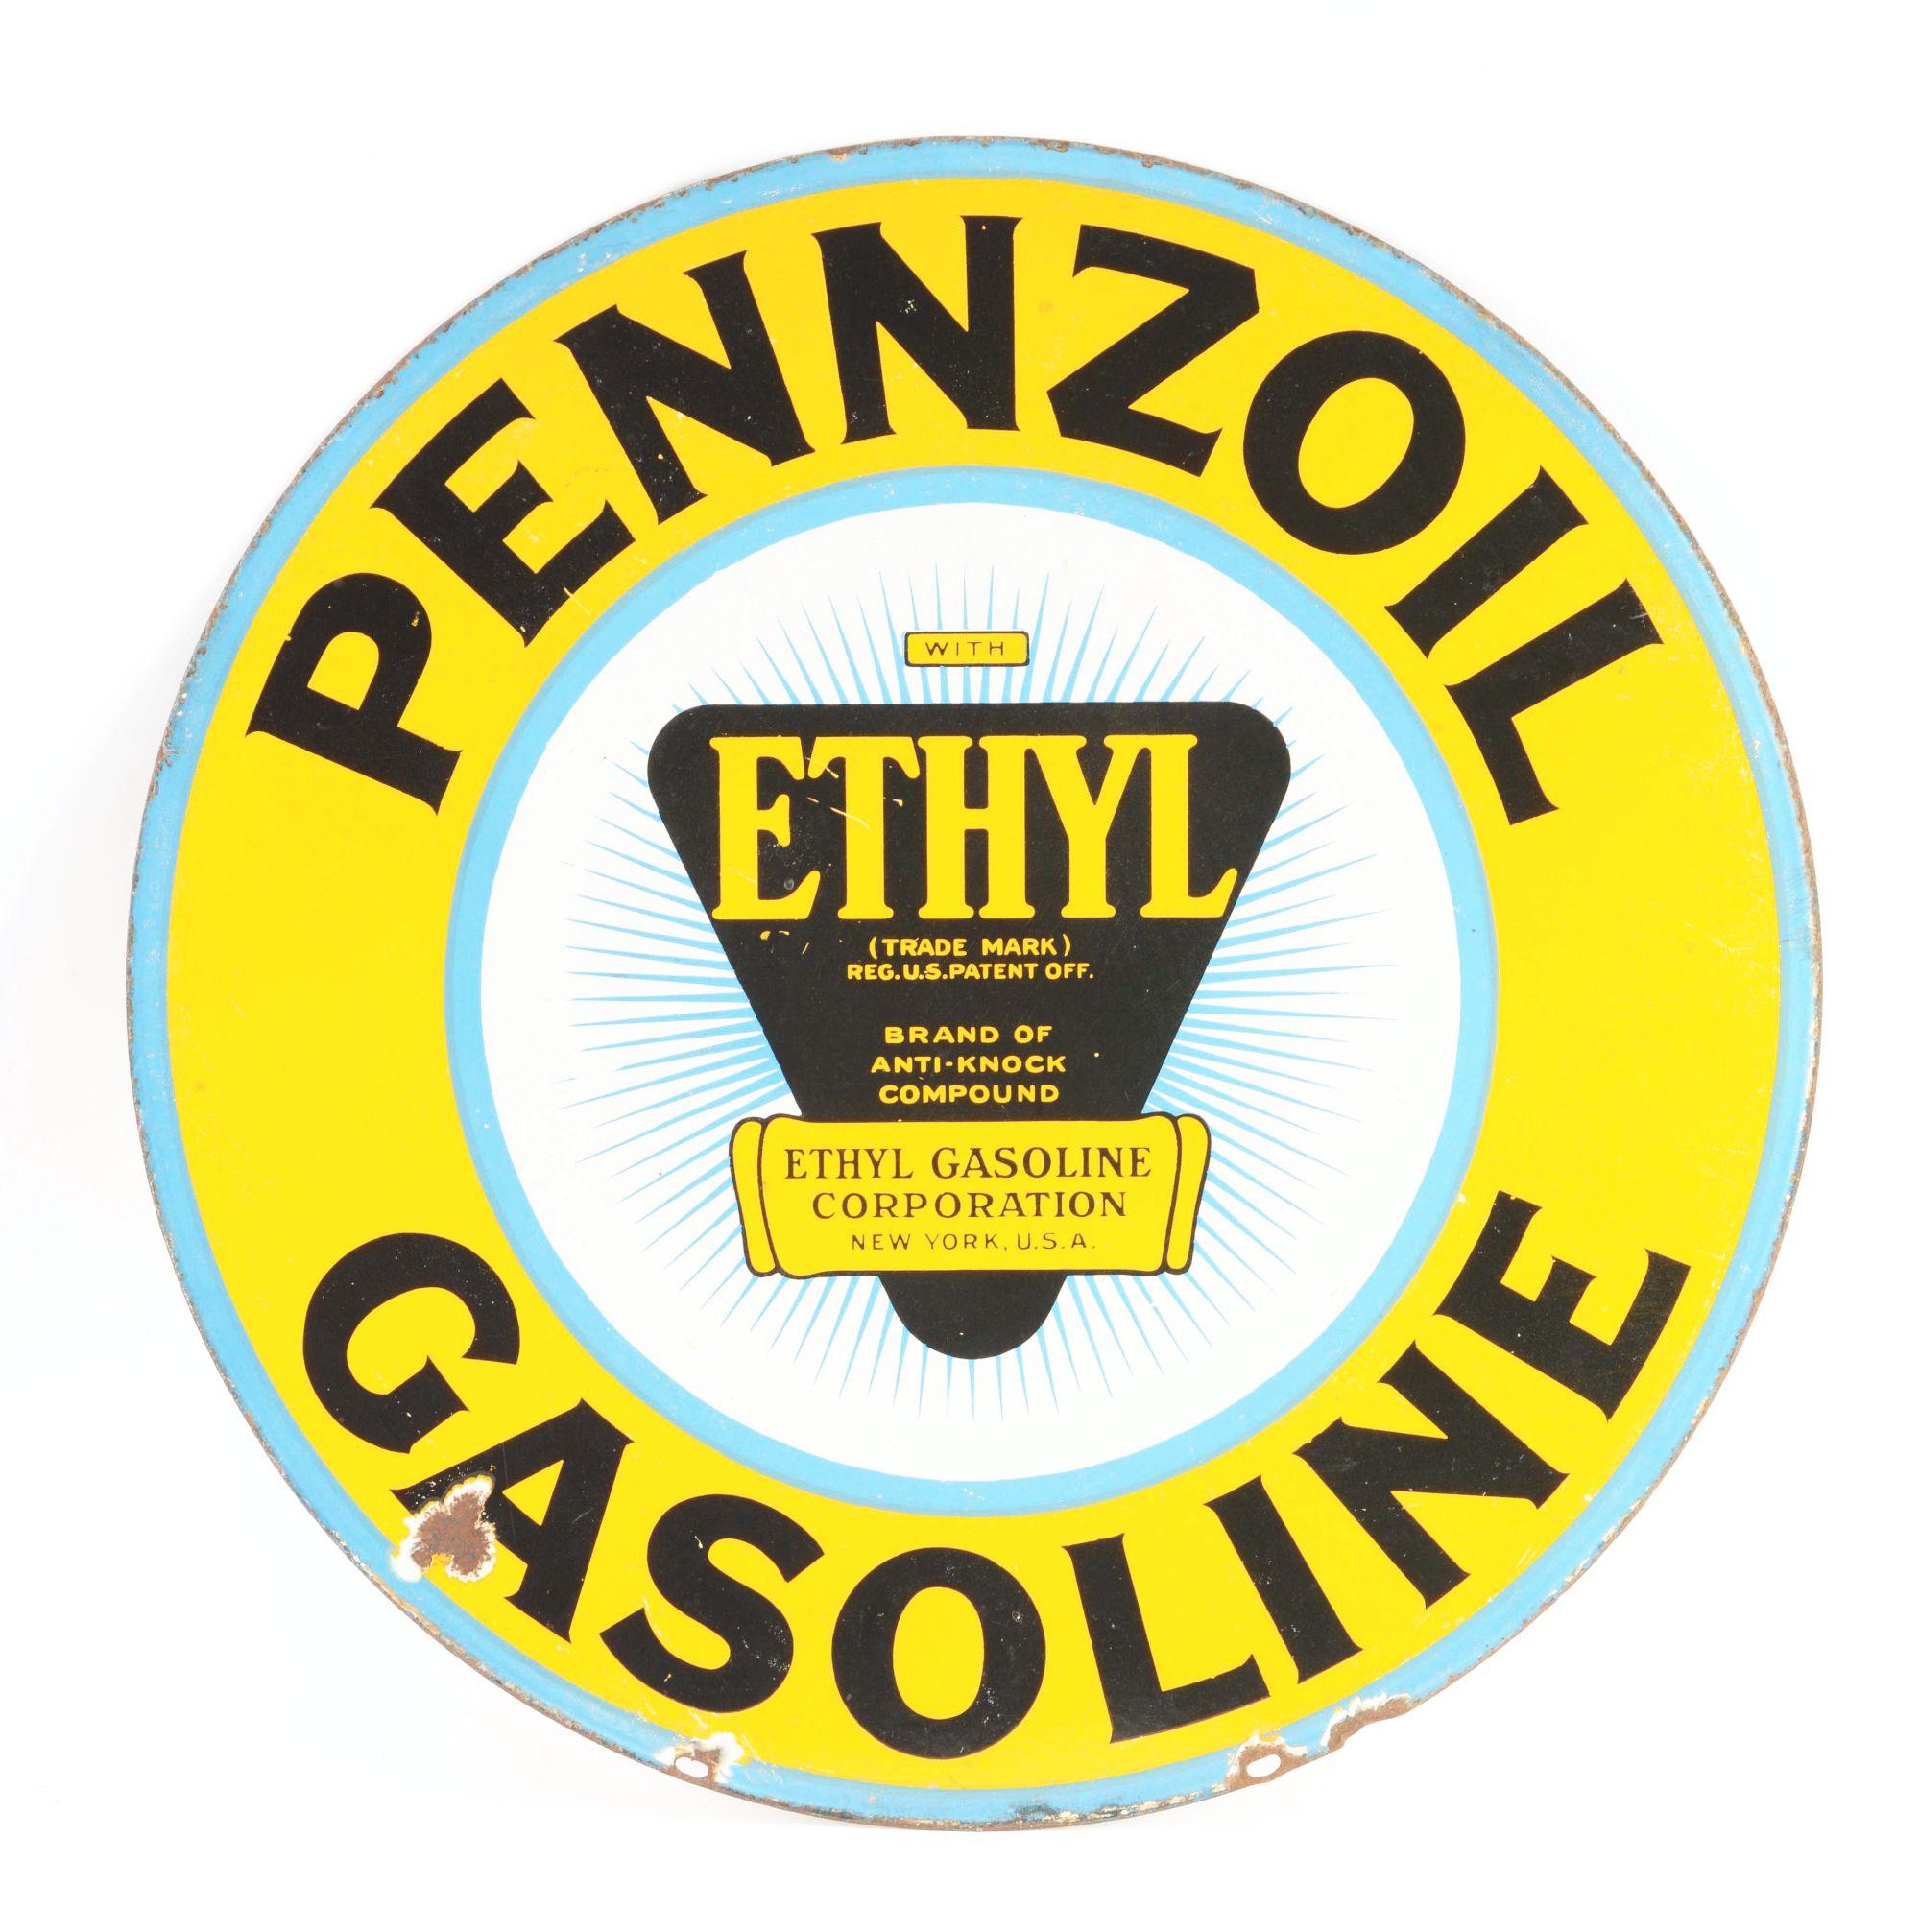 Pennzoil Gasoline Porcelain Curb Sign W/ Ethyl Burst Graphic.